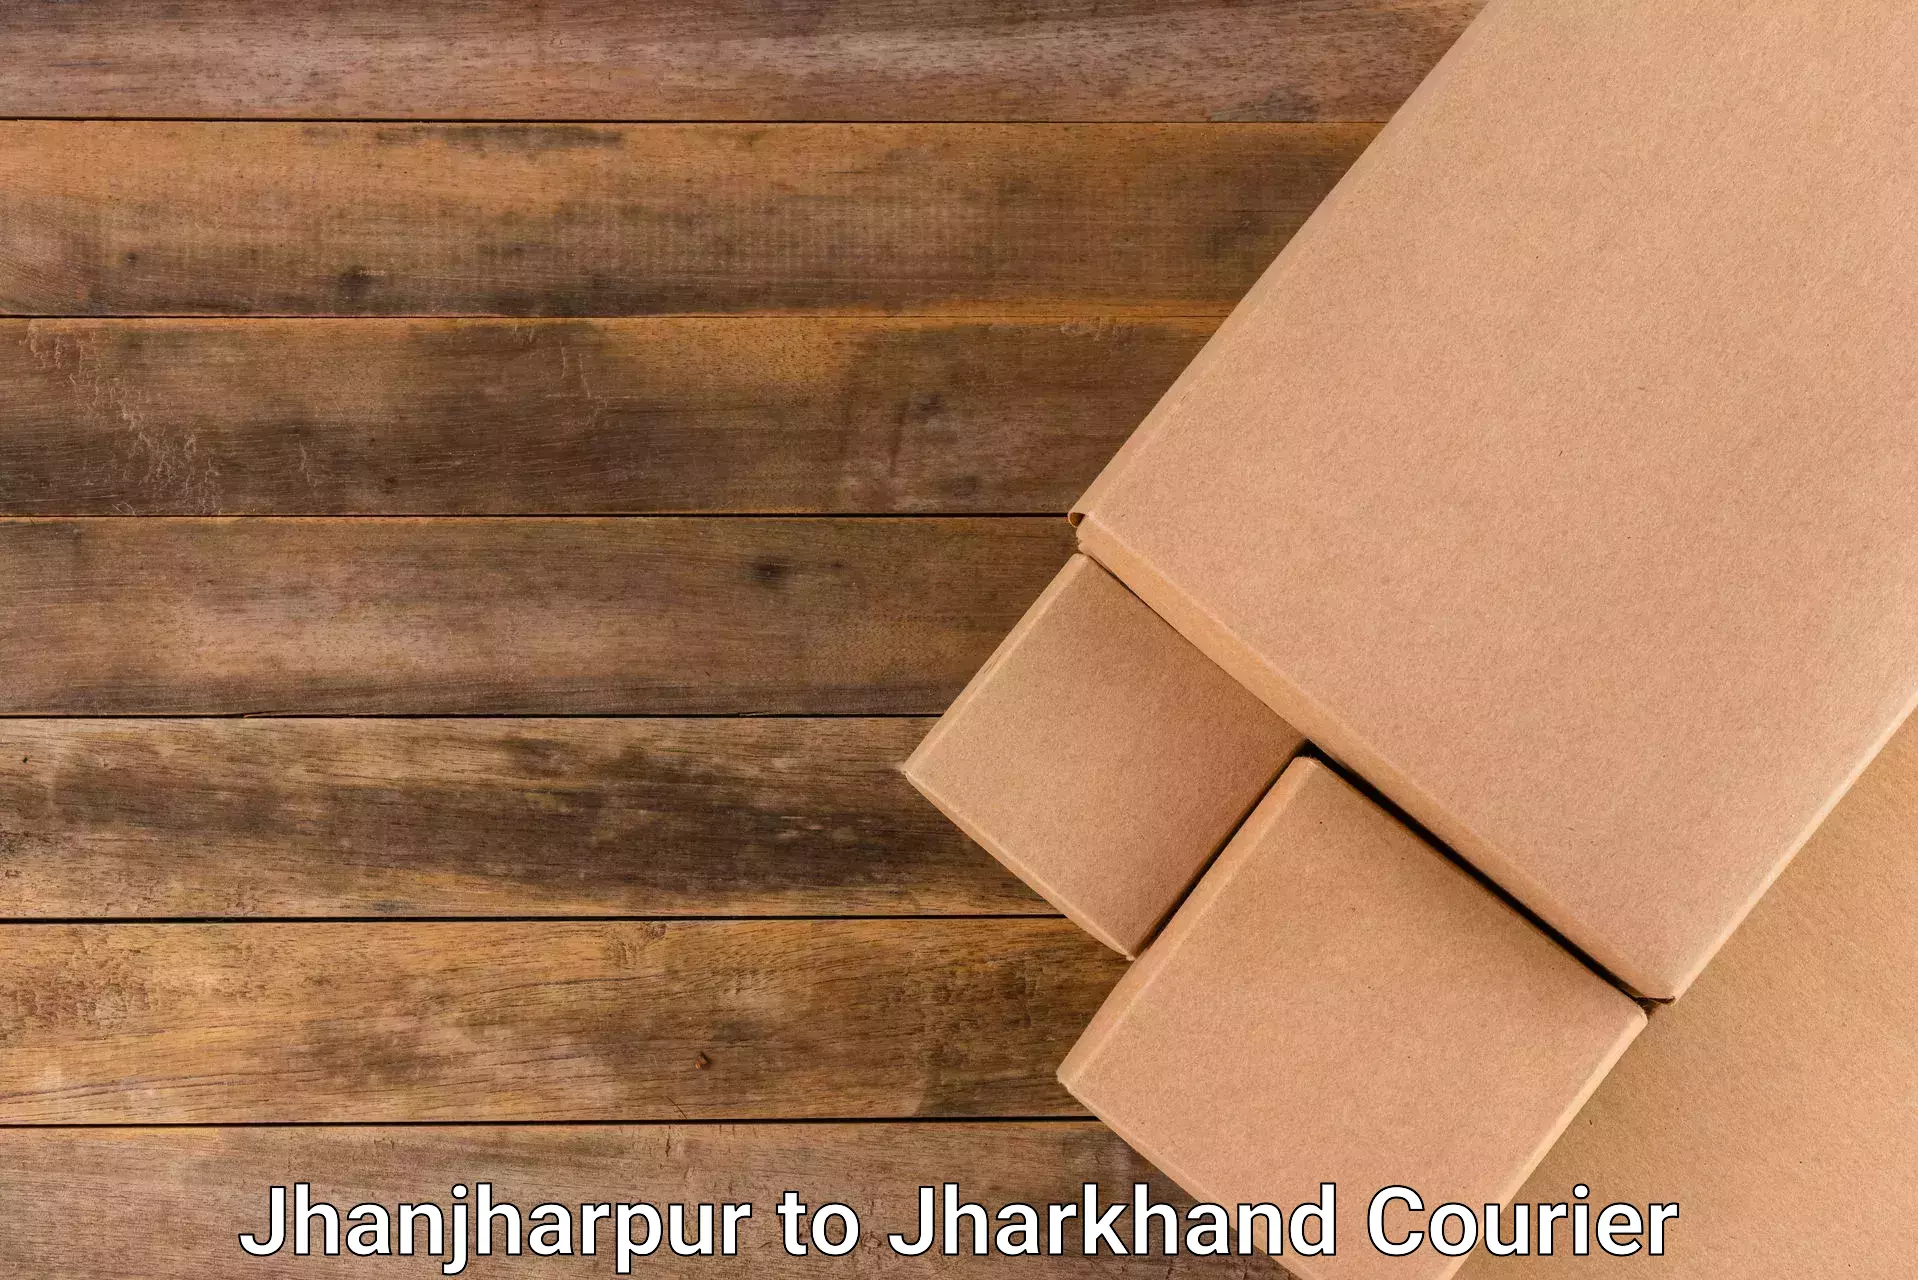 Customer-centric shipping in Jhanjharpur to Jamtara